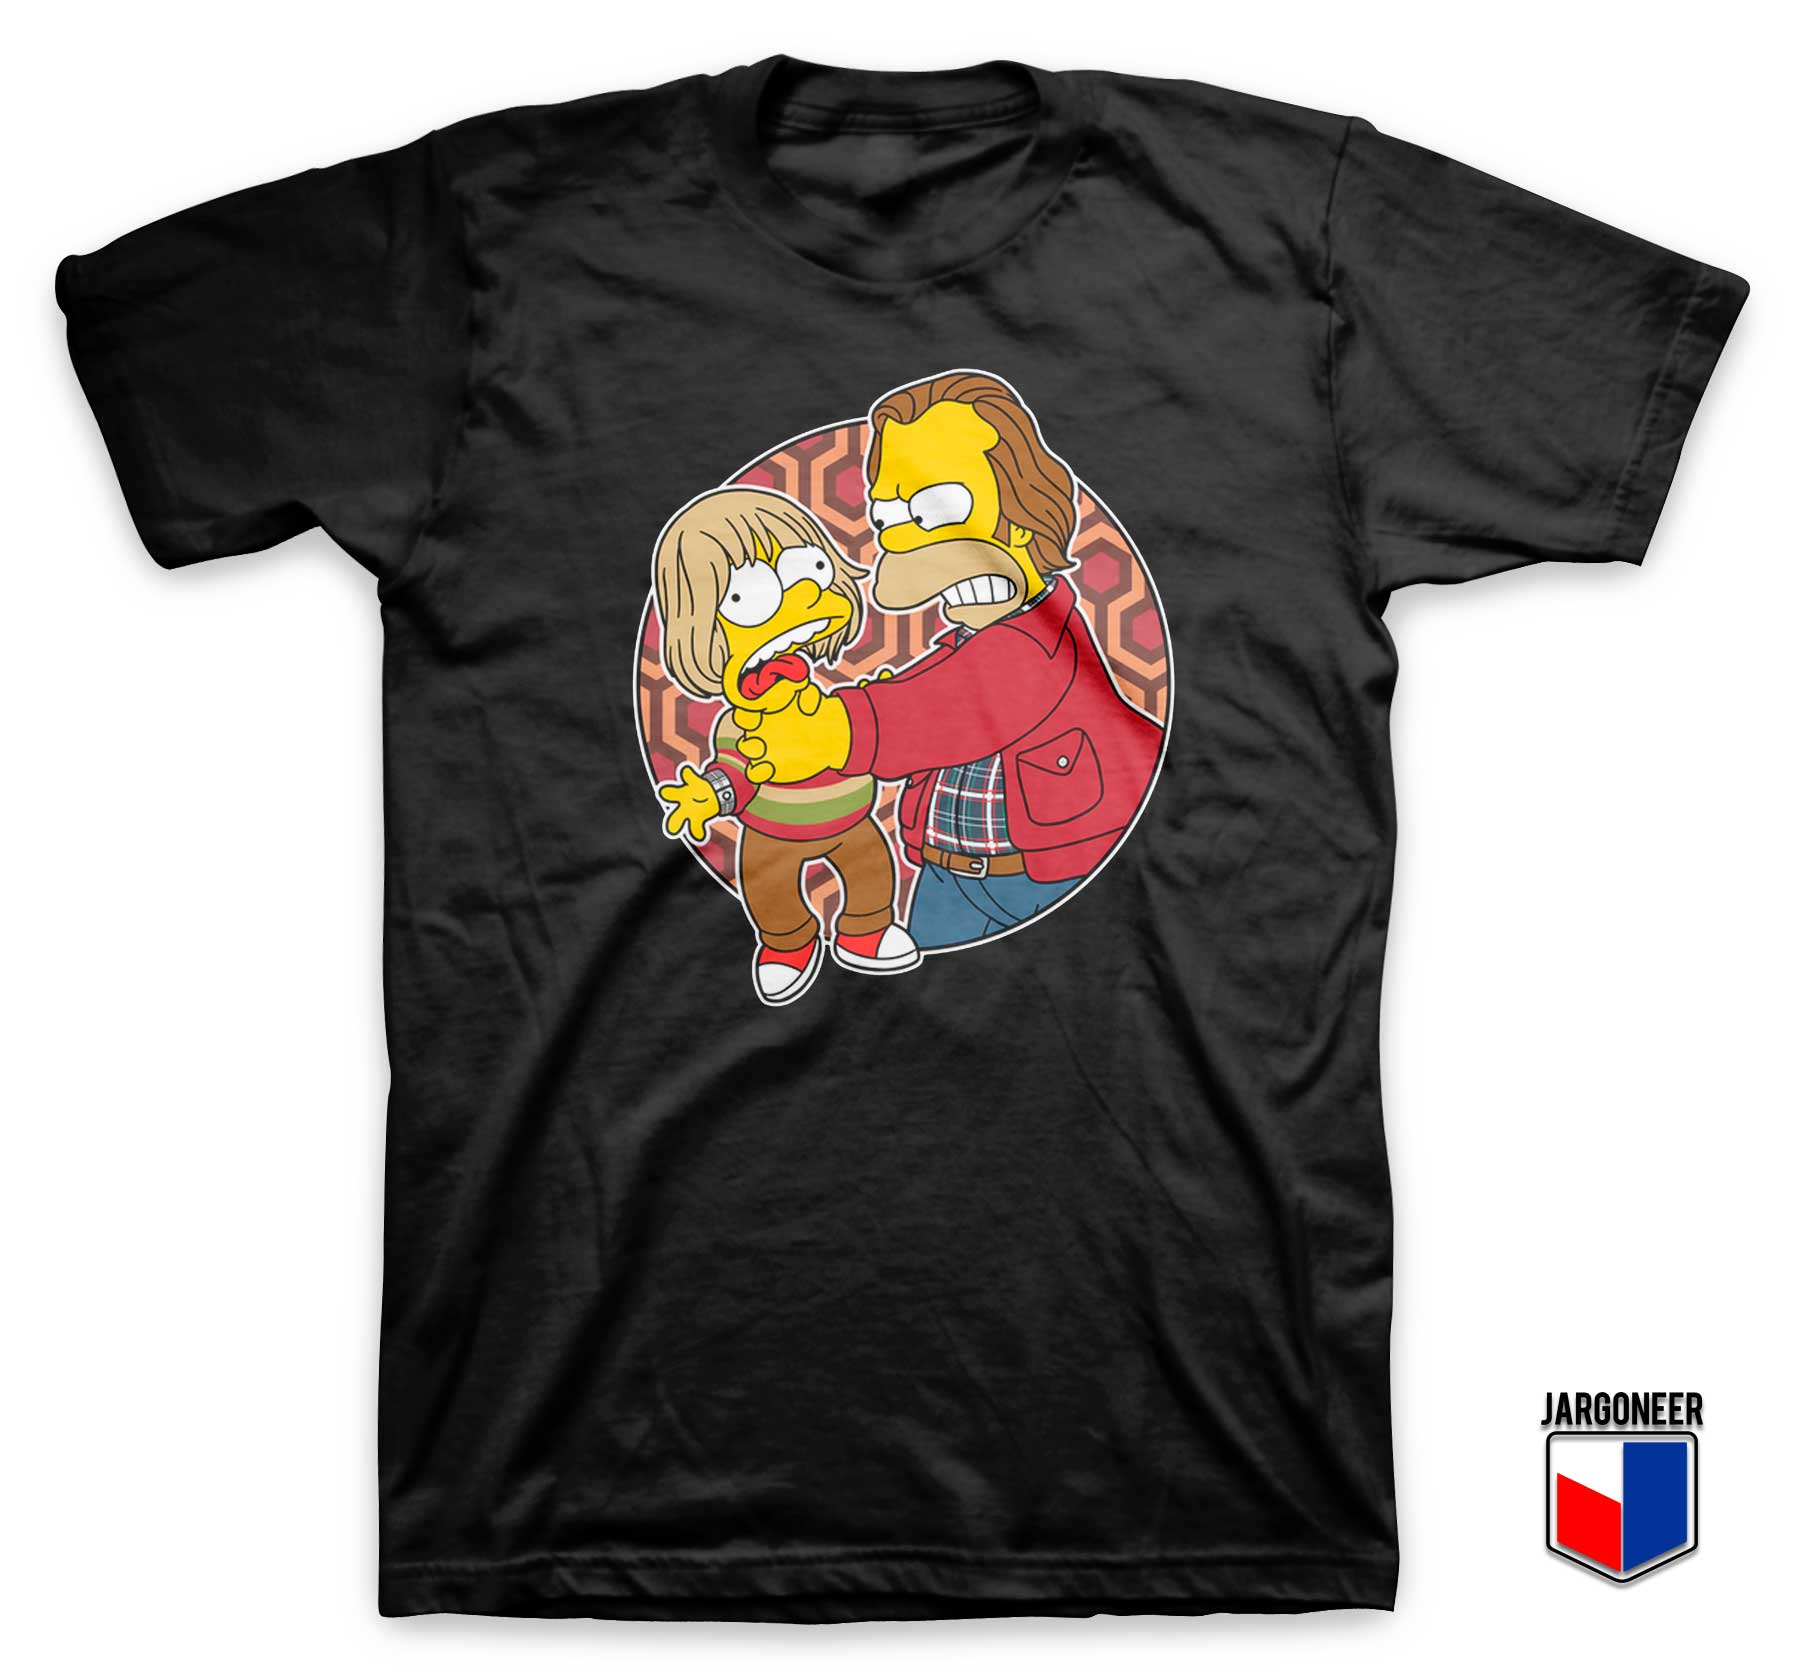 Bart Little Torrance Shirt - Shop Unique Graphic Cool Shirt Designs